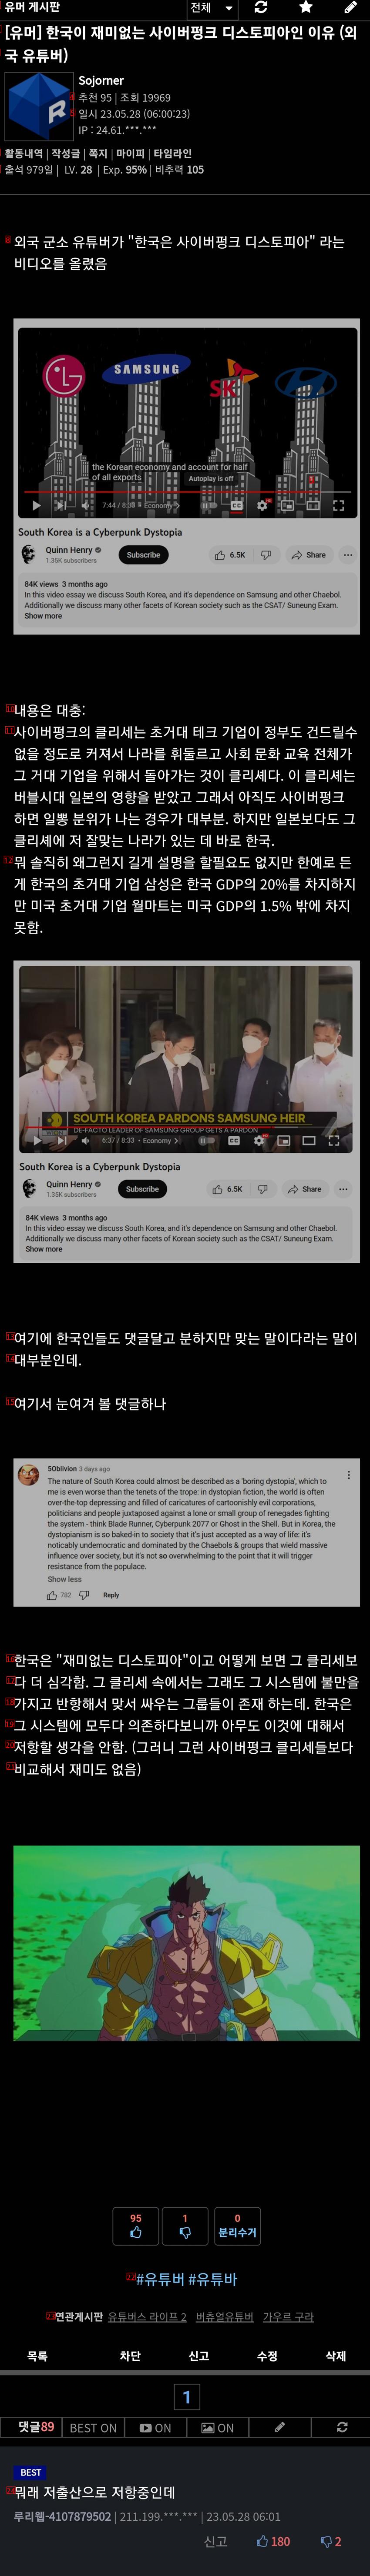 韓国が面白くないサイバーパンクディストピアである理由、外国YouTuber